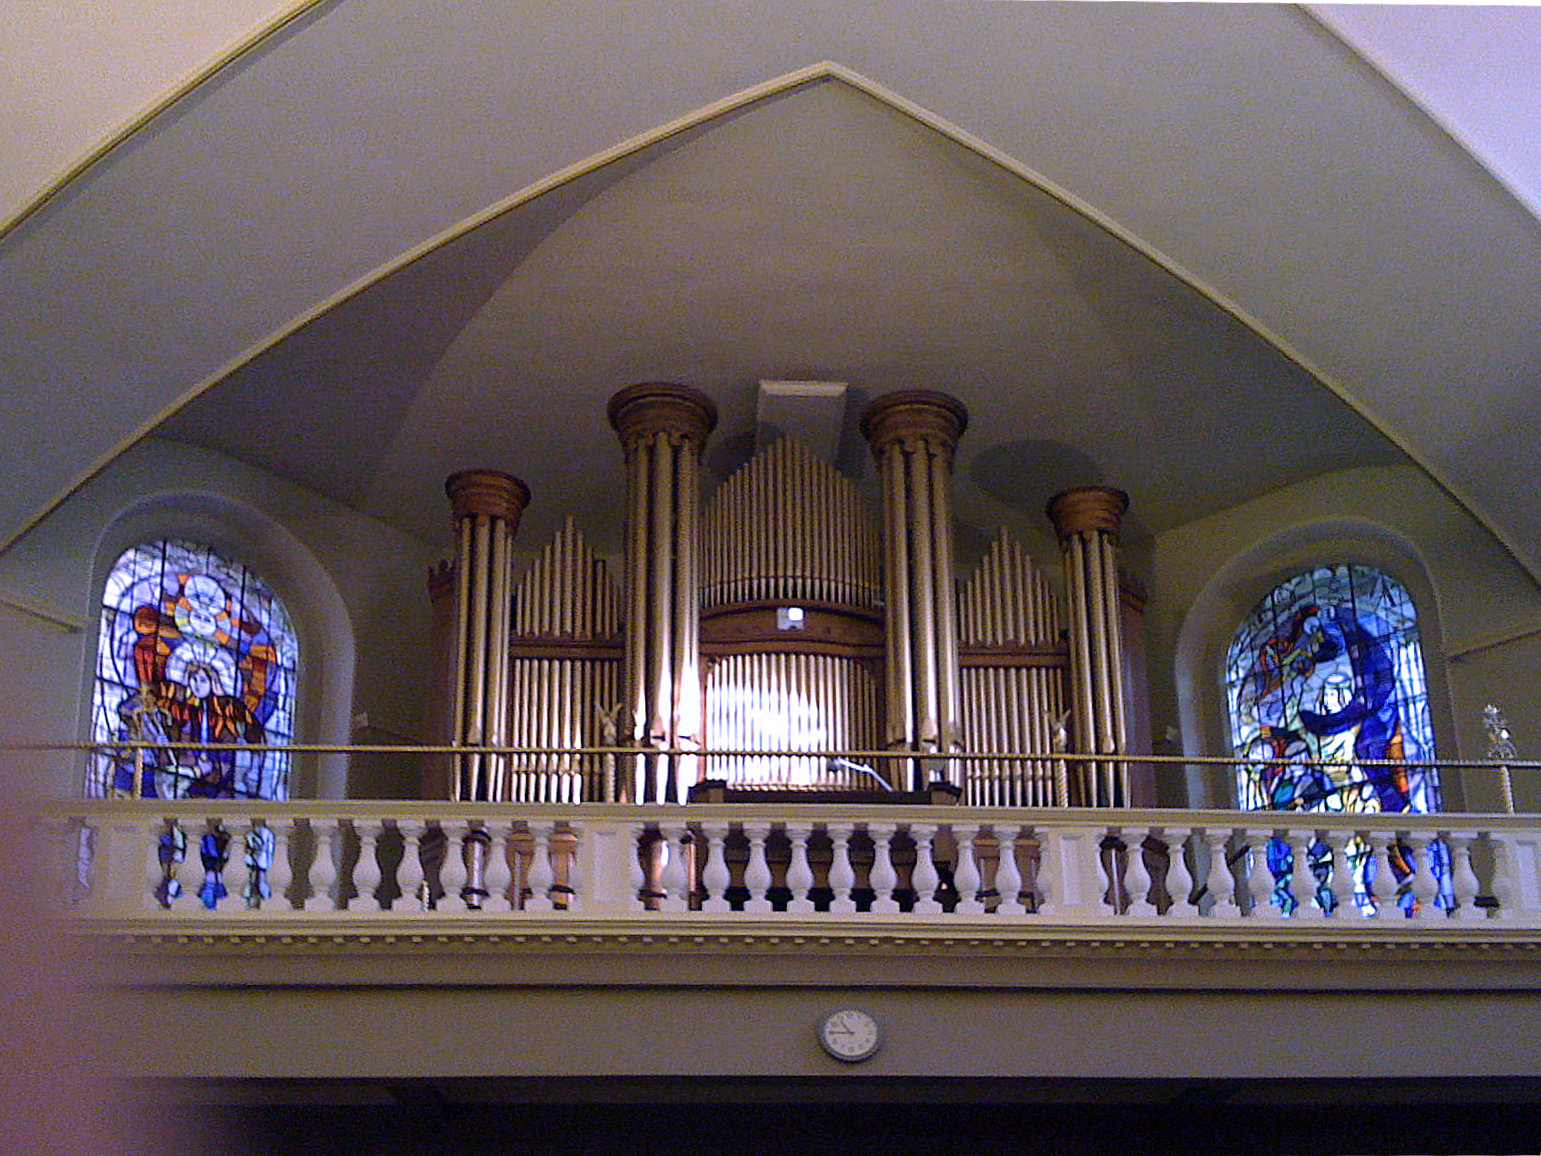 St Teresa's Church, organ